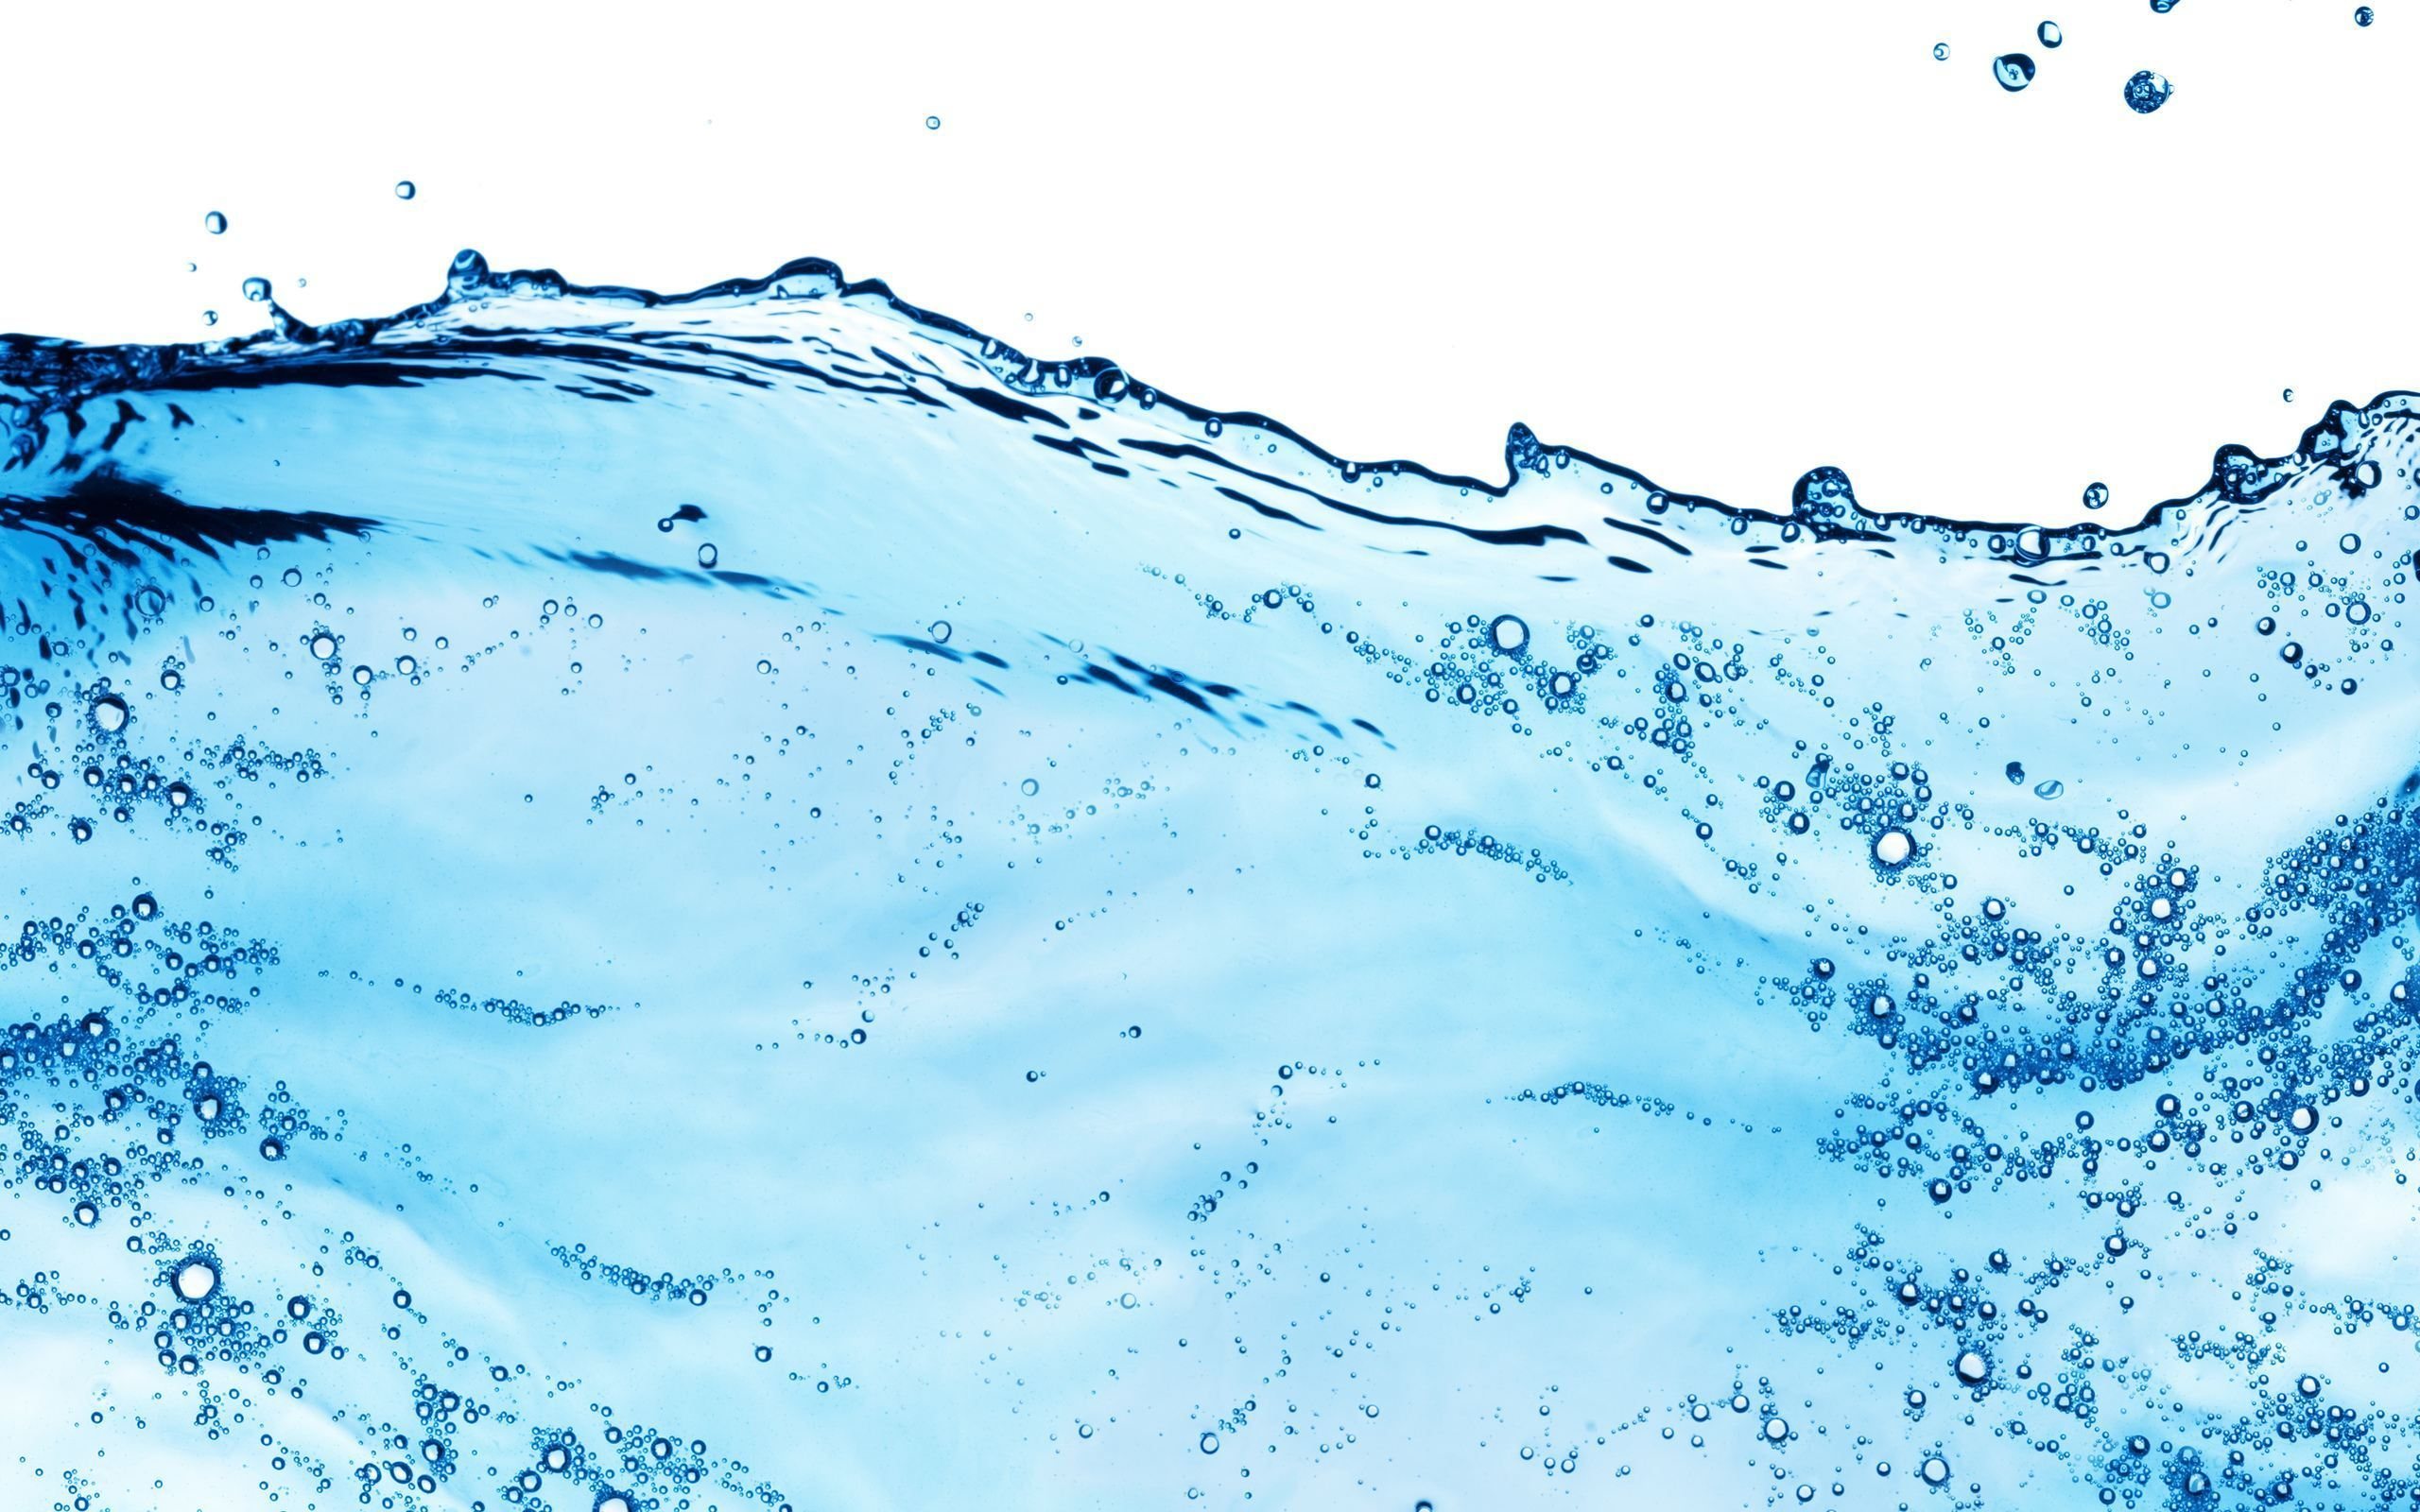 Water 1080p Wallpaper - Mbagusi.com